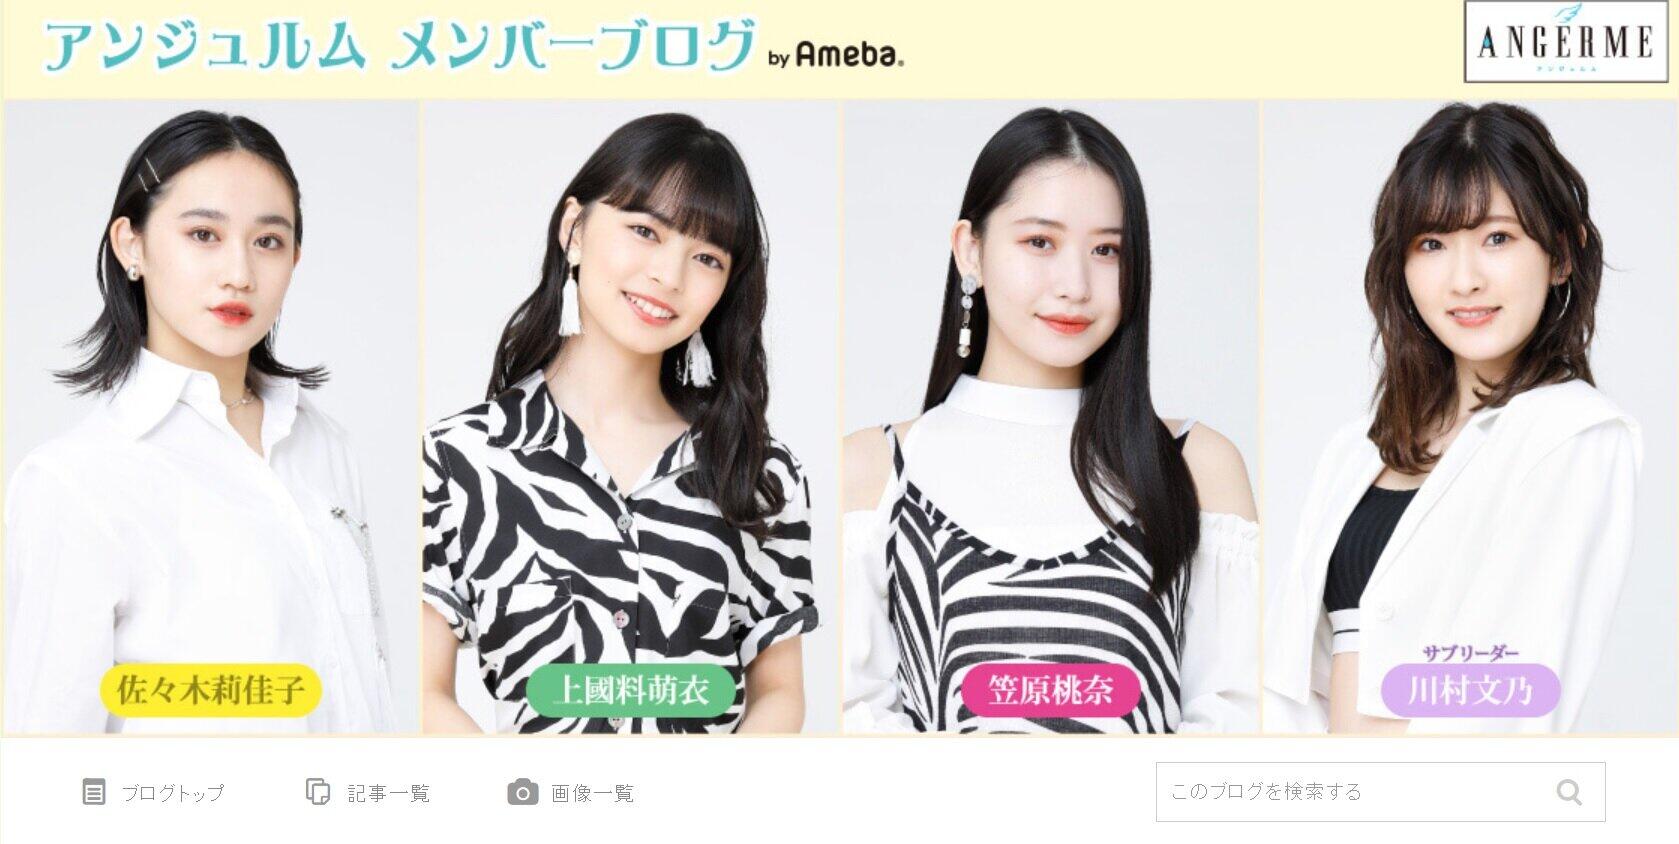 アンジュルムのメンバーブログ（Ameba）で、佐々木莉佳子さん（向かって1番左）が元同僚への思いを吐露した。（画像は同ブログから）